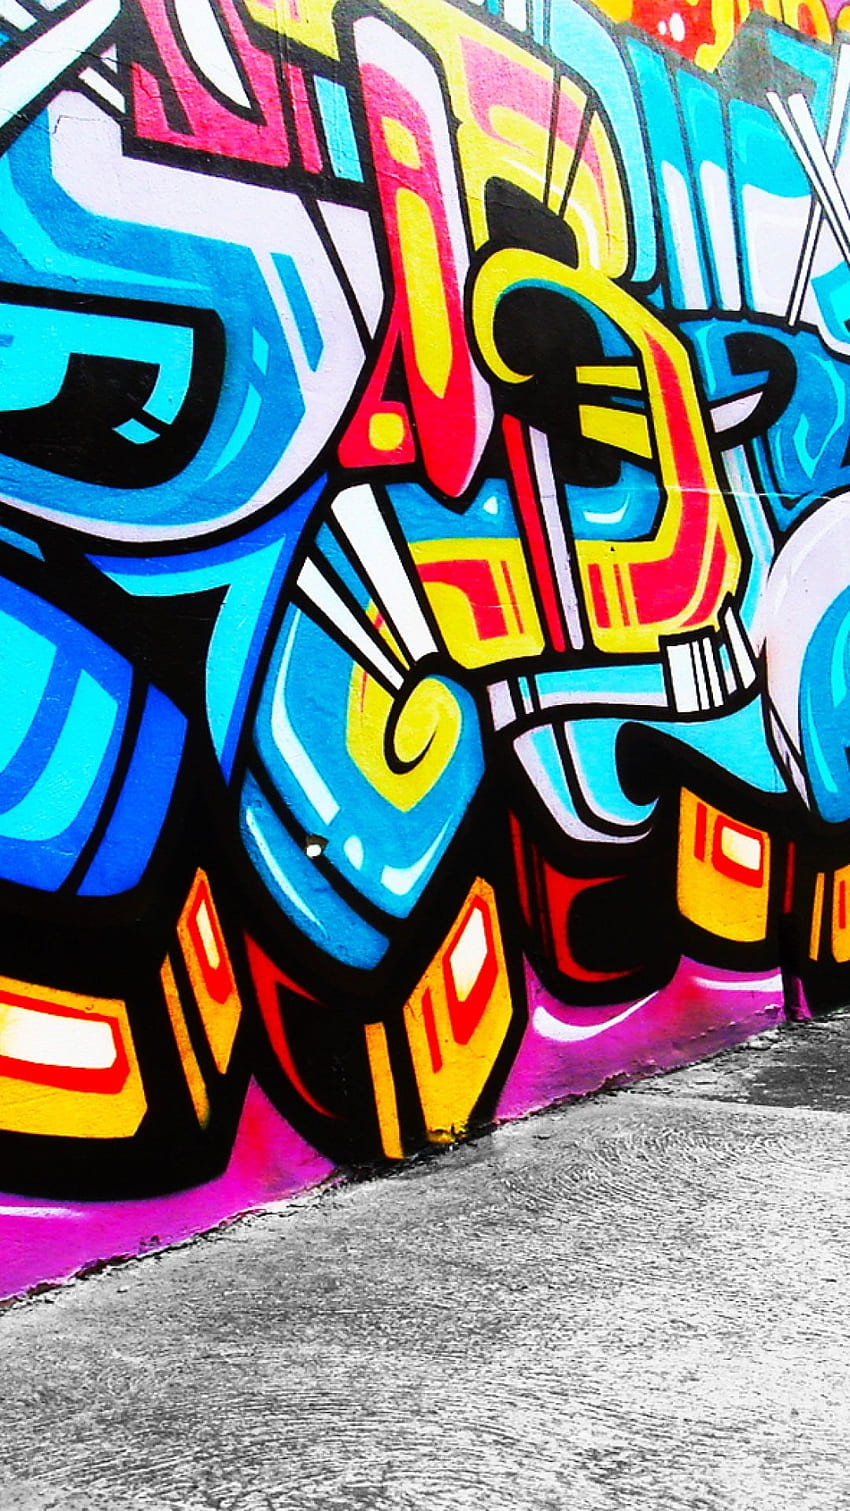 Những tác phẩm đường phố nổi tiếng thế giới đều bắt nguồn từ những bức tường graffiti đầy màu sắc. Với Graffiti wall backgrounds, hãy cảm nhận sự táo bạo và đam mê của những nghệ sĩ đường phố, để bức tranh nghệ thuật tuyệt đẹp trở thành \